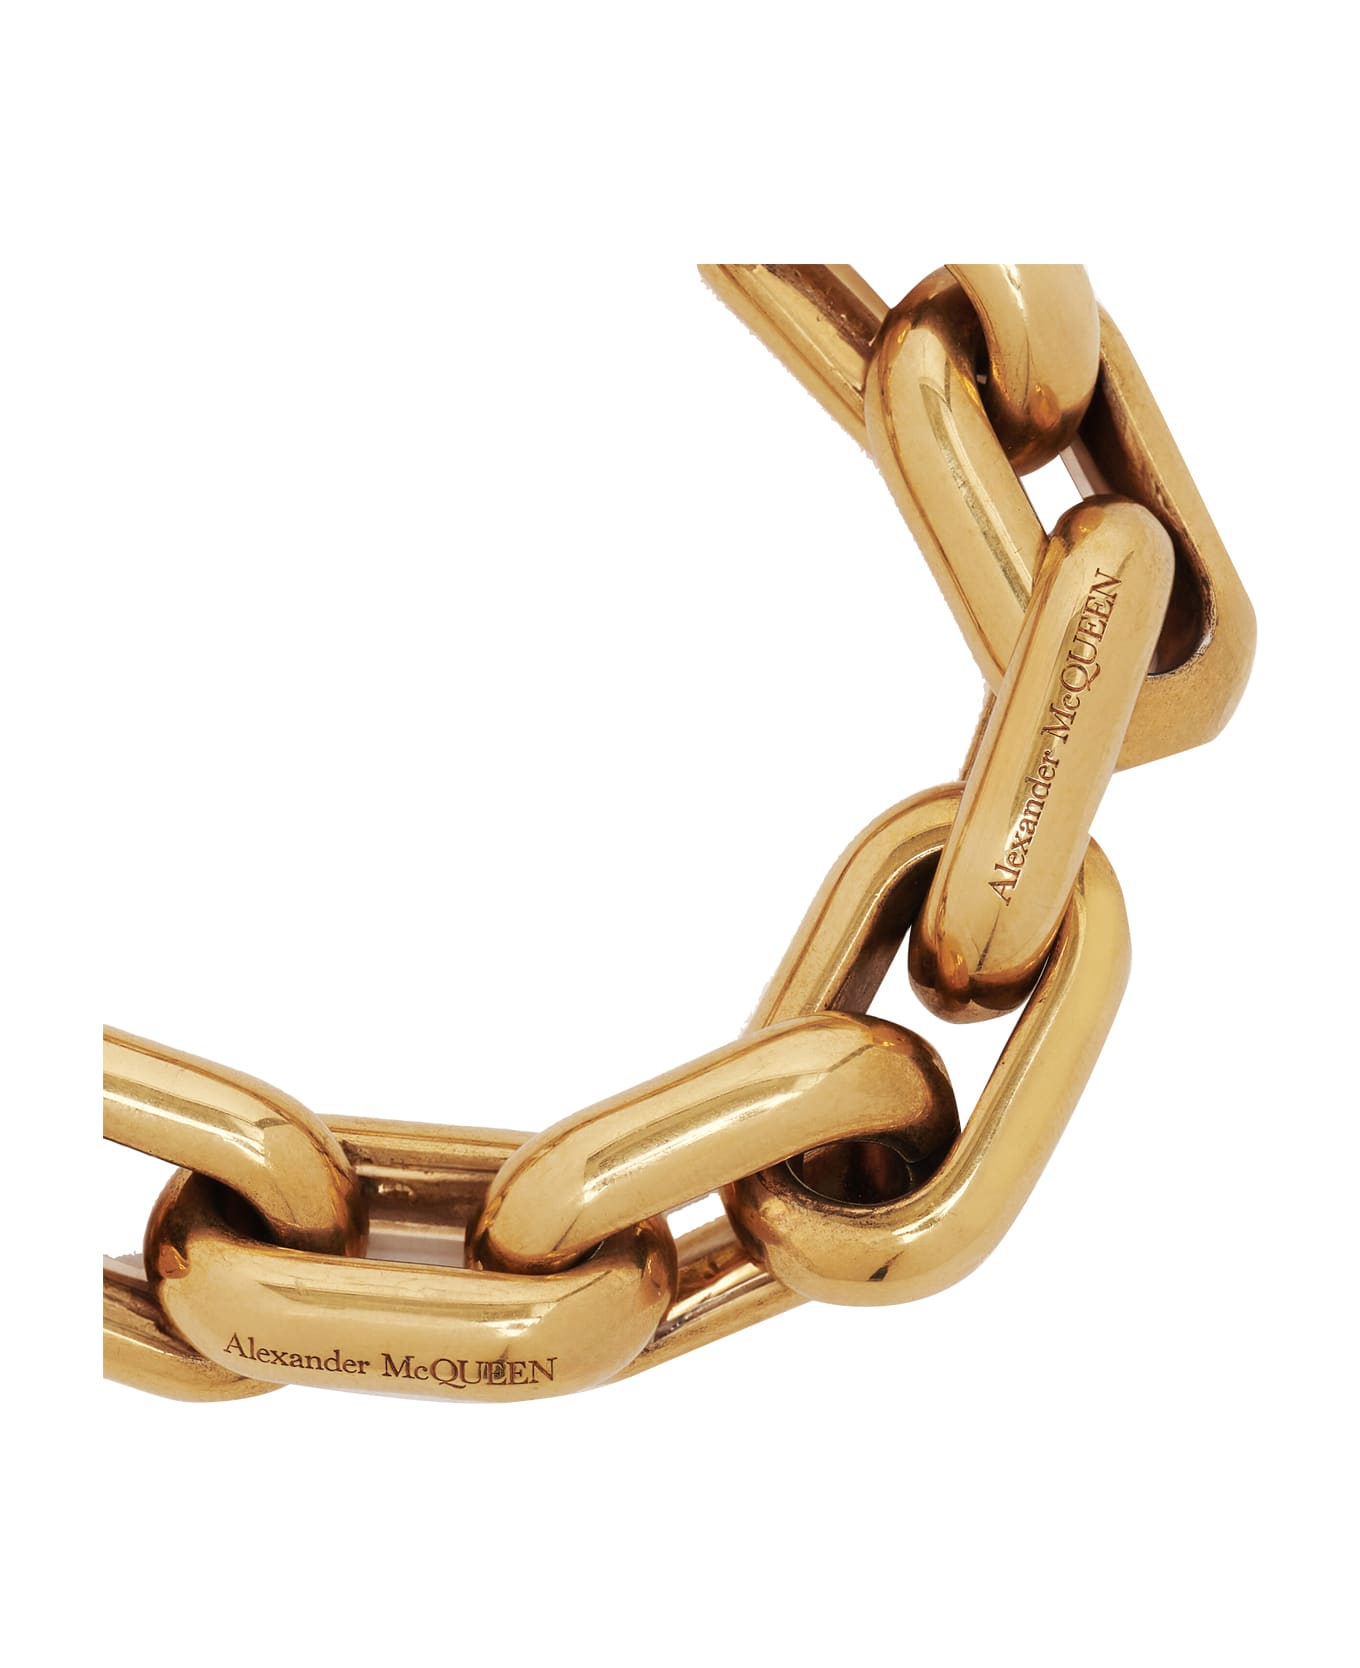 Alexander McQueen Peak Chain Bracelet - Light ant.gold